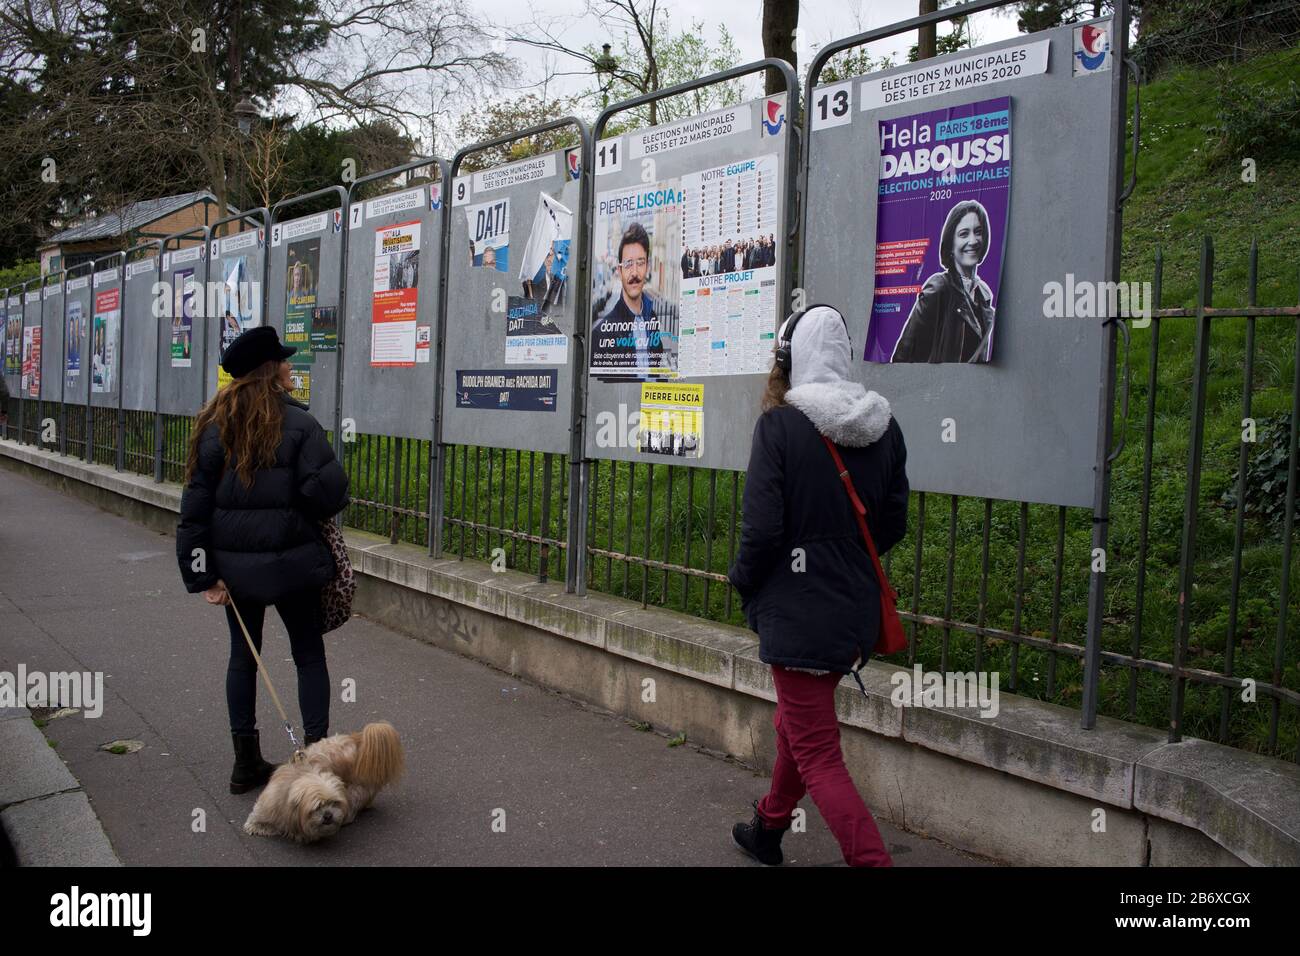 París se prepara para las elecciones locales francesas en medio de temores coronavirus, rue Ronsard, 75018 París, Francia - Marzo 2020 Foto de stock